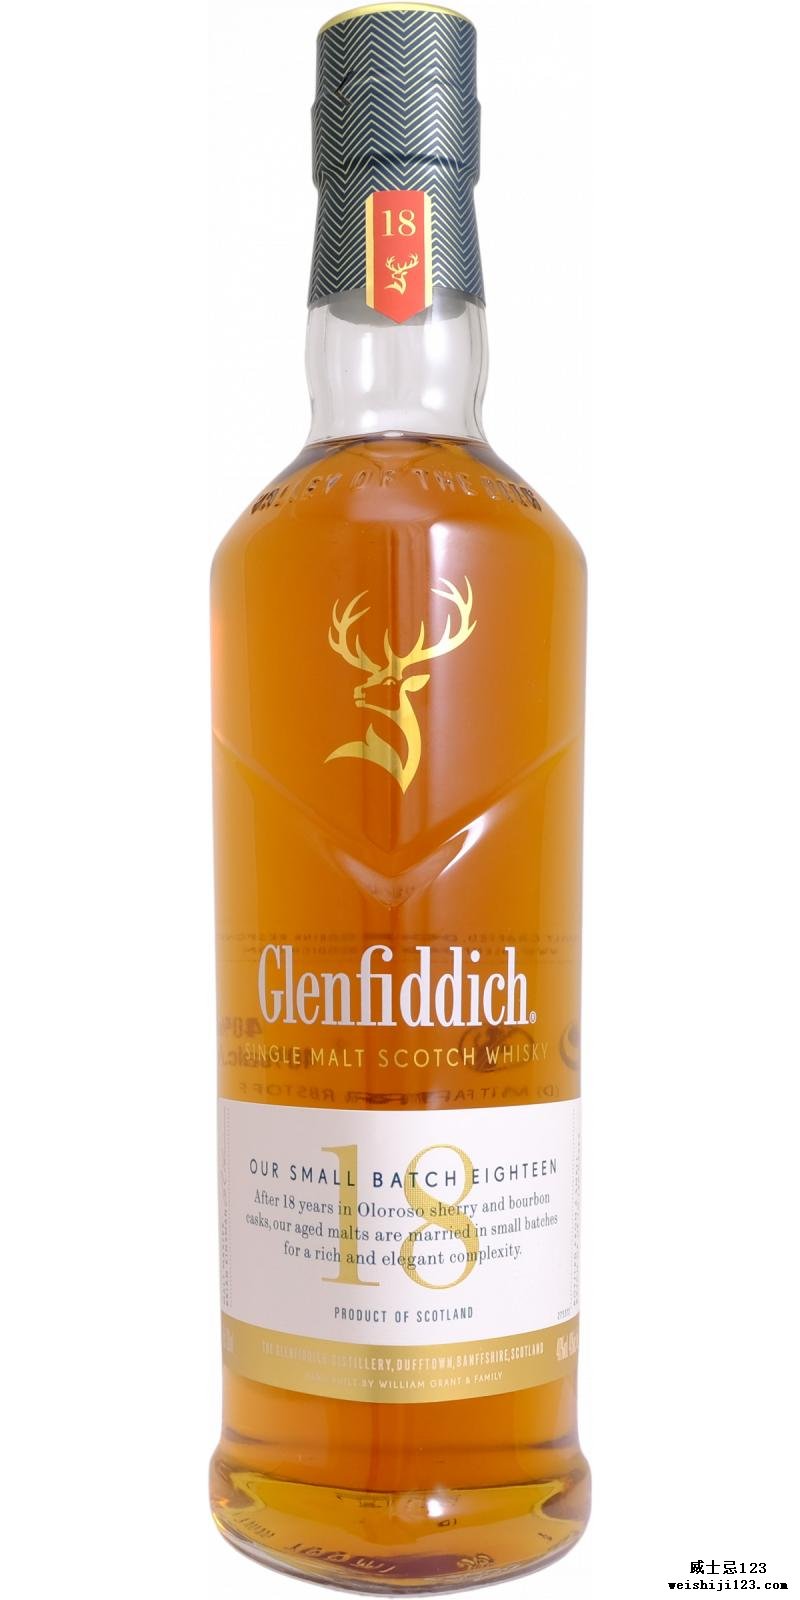 Glenfiddich 18-year-old